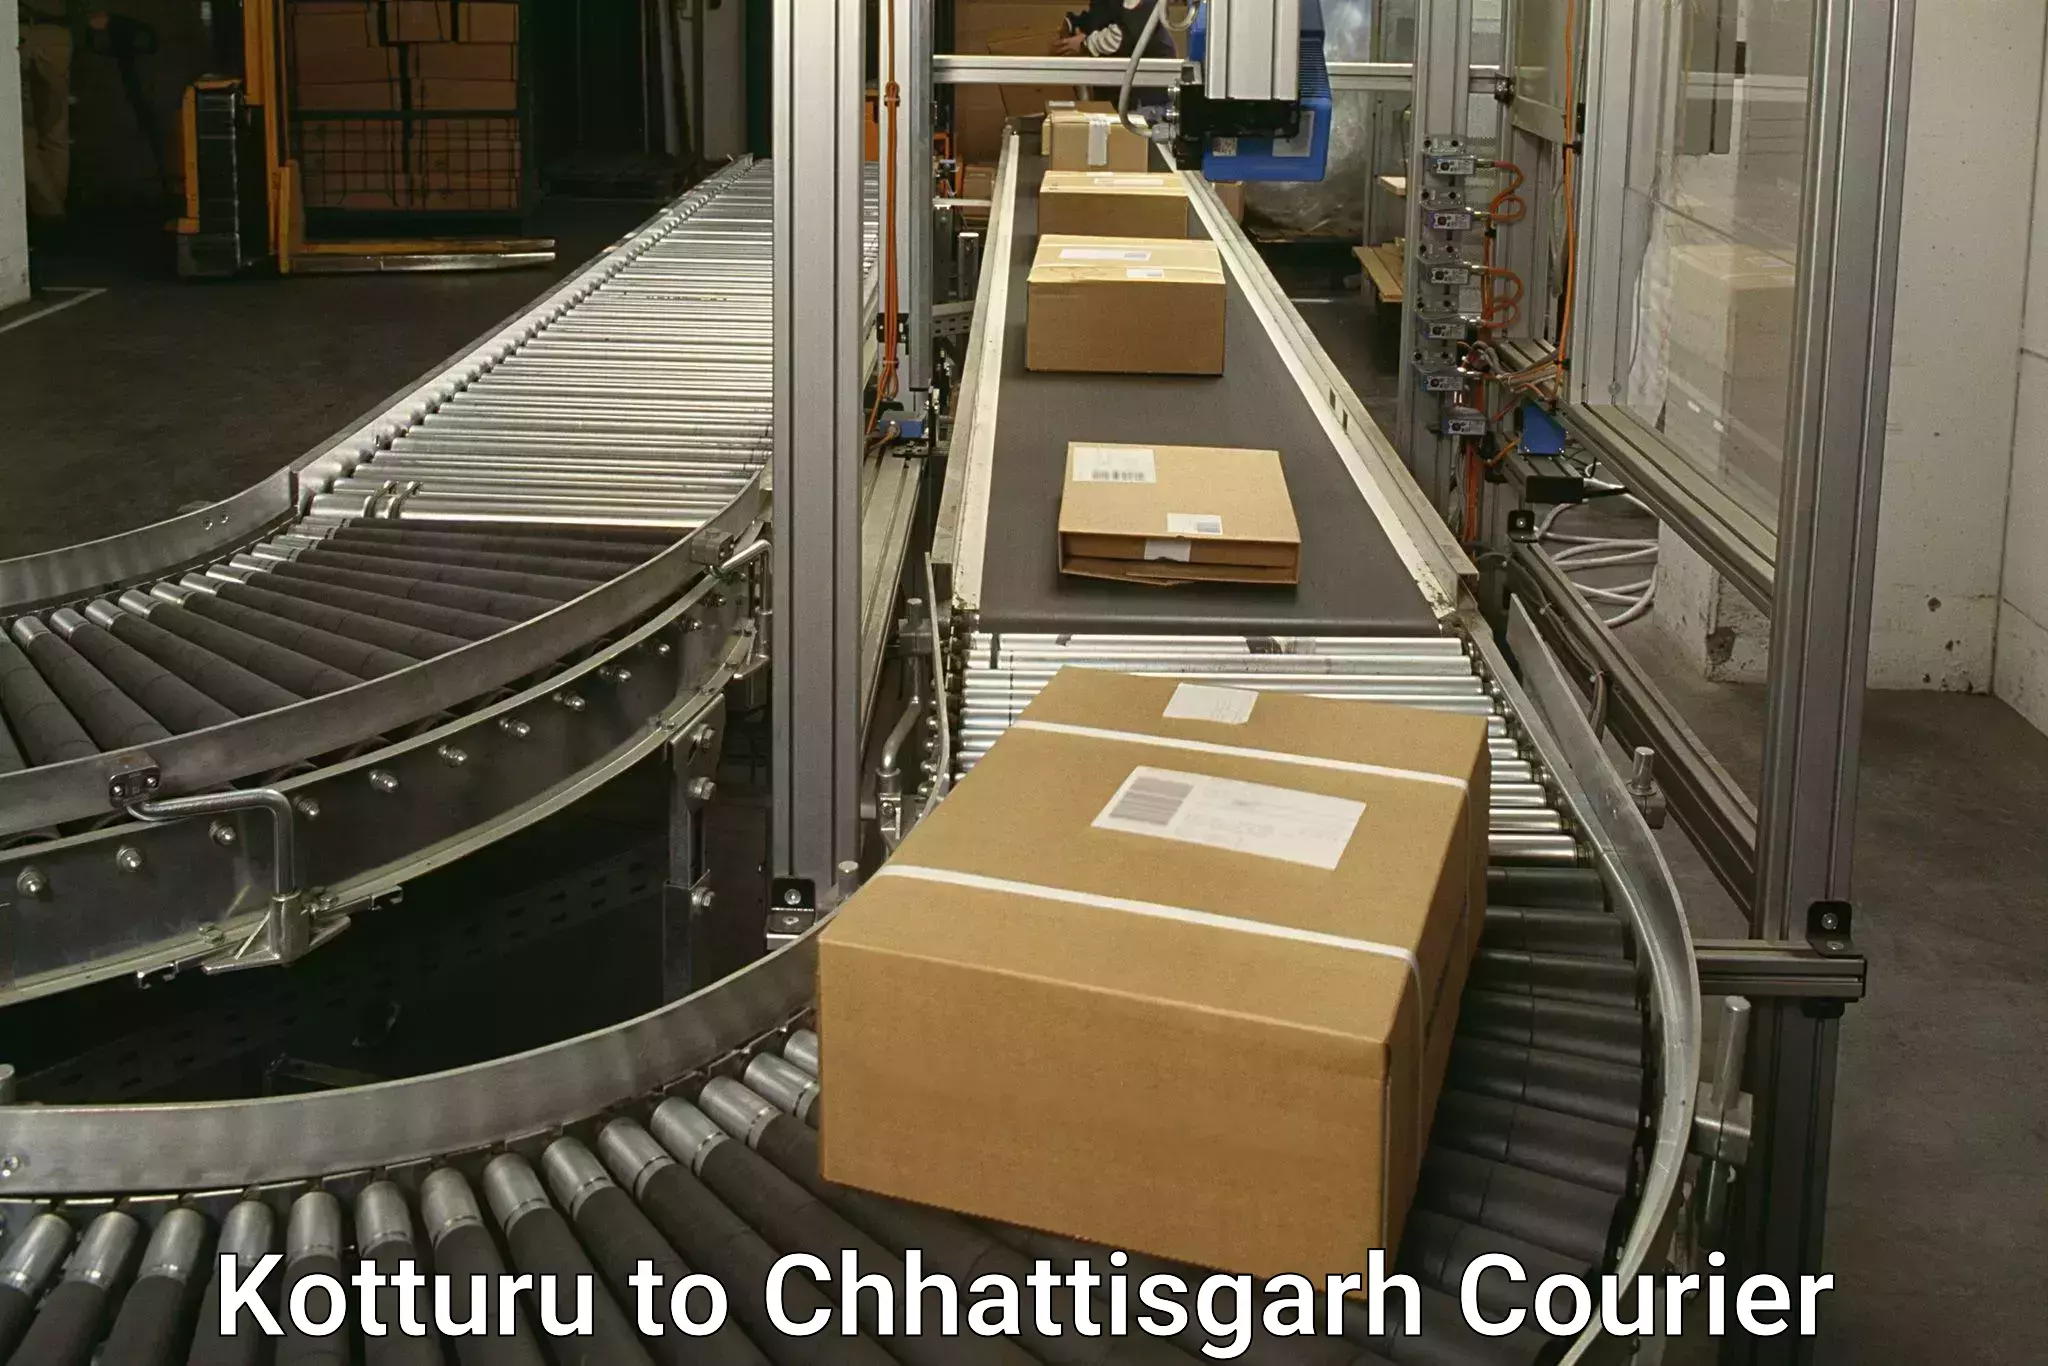 Courier service booking Kotturu to Chhattisgarh